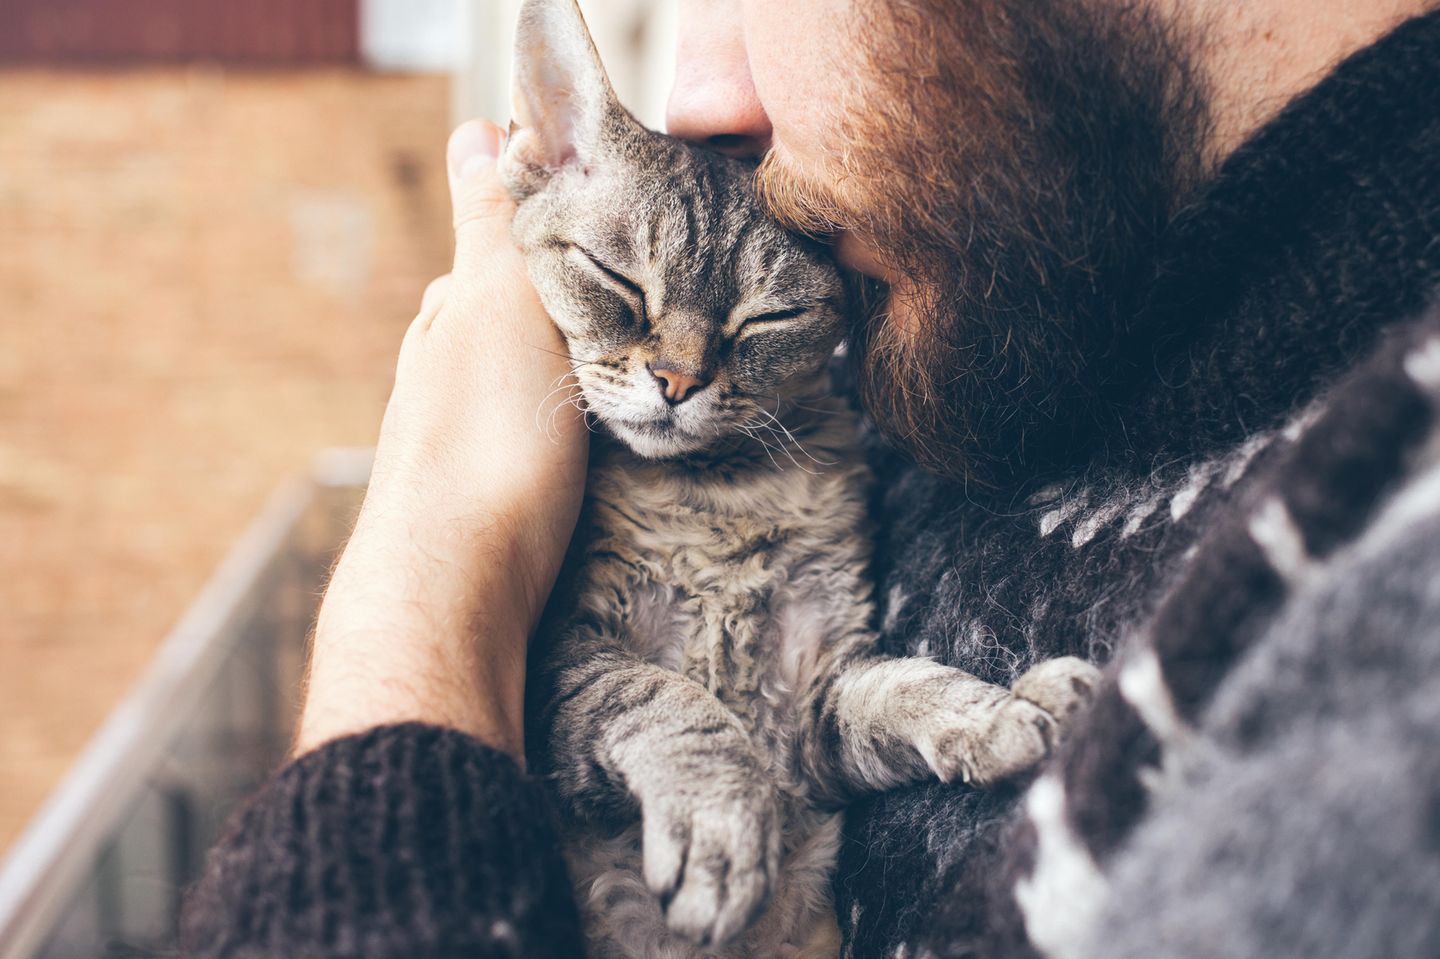 Katze wählt Notruf: Katze auf dem Arm eines Mannes